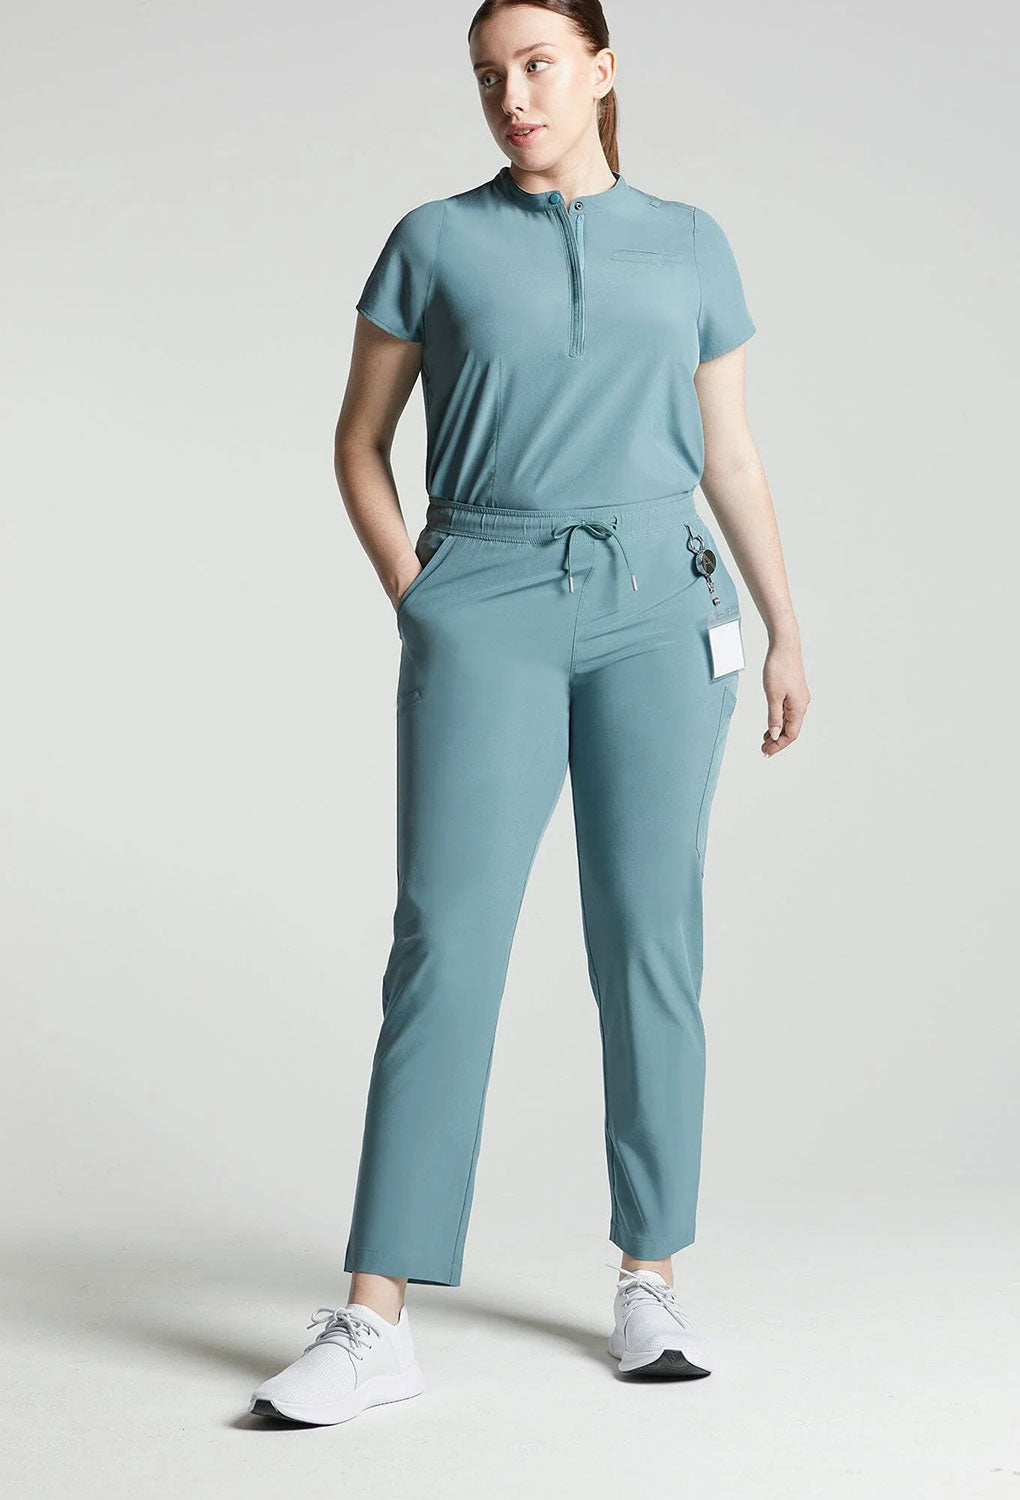 Women's Scrub Pants, Medical Uniforms